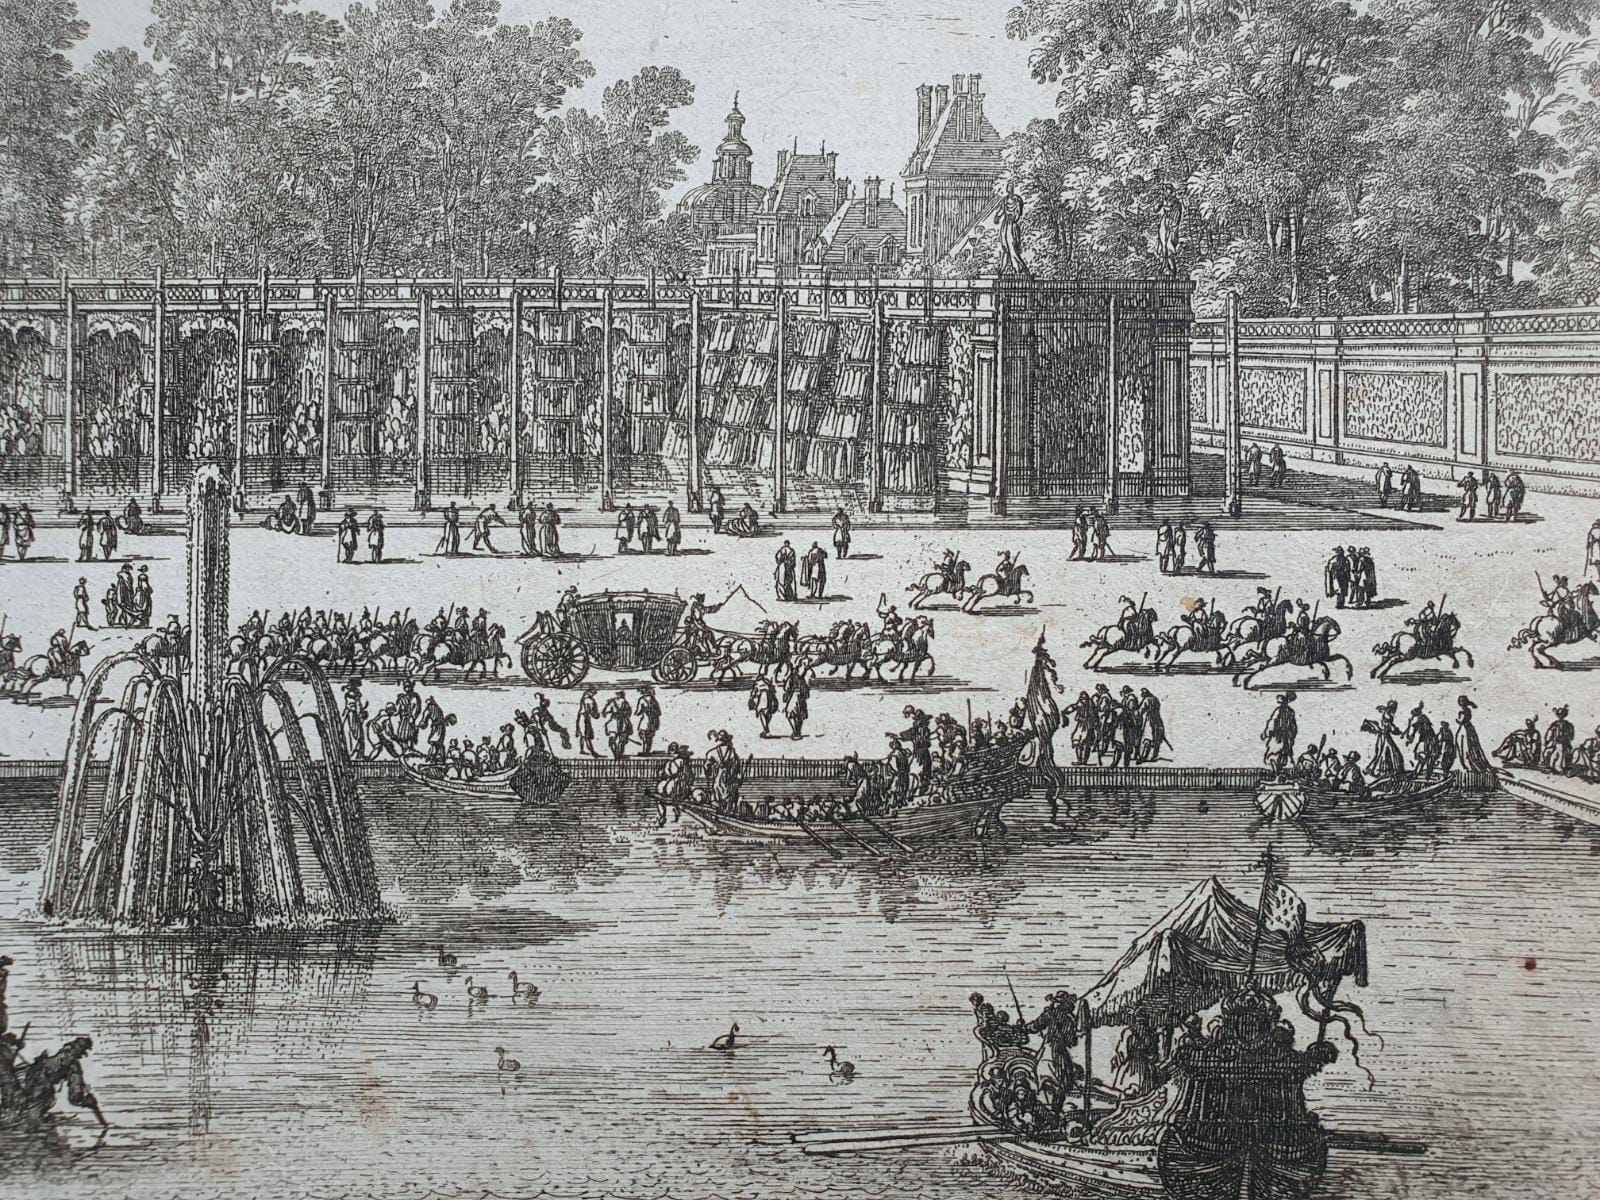 [Antique etching, ets] N. Langlois, Les cascades de Fontainebleau (Waterval bij Fontainebleau, Parijs), published before 1700.